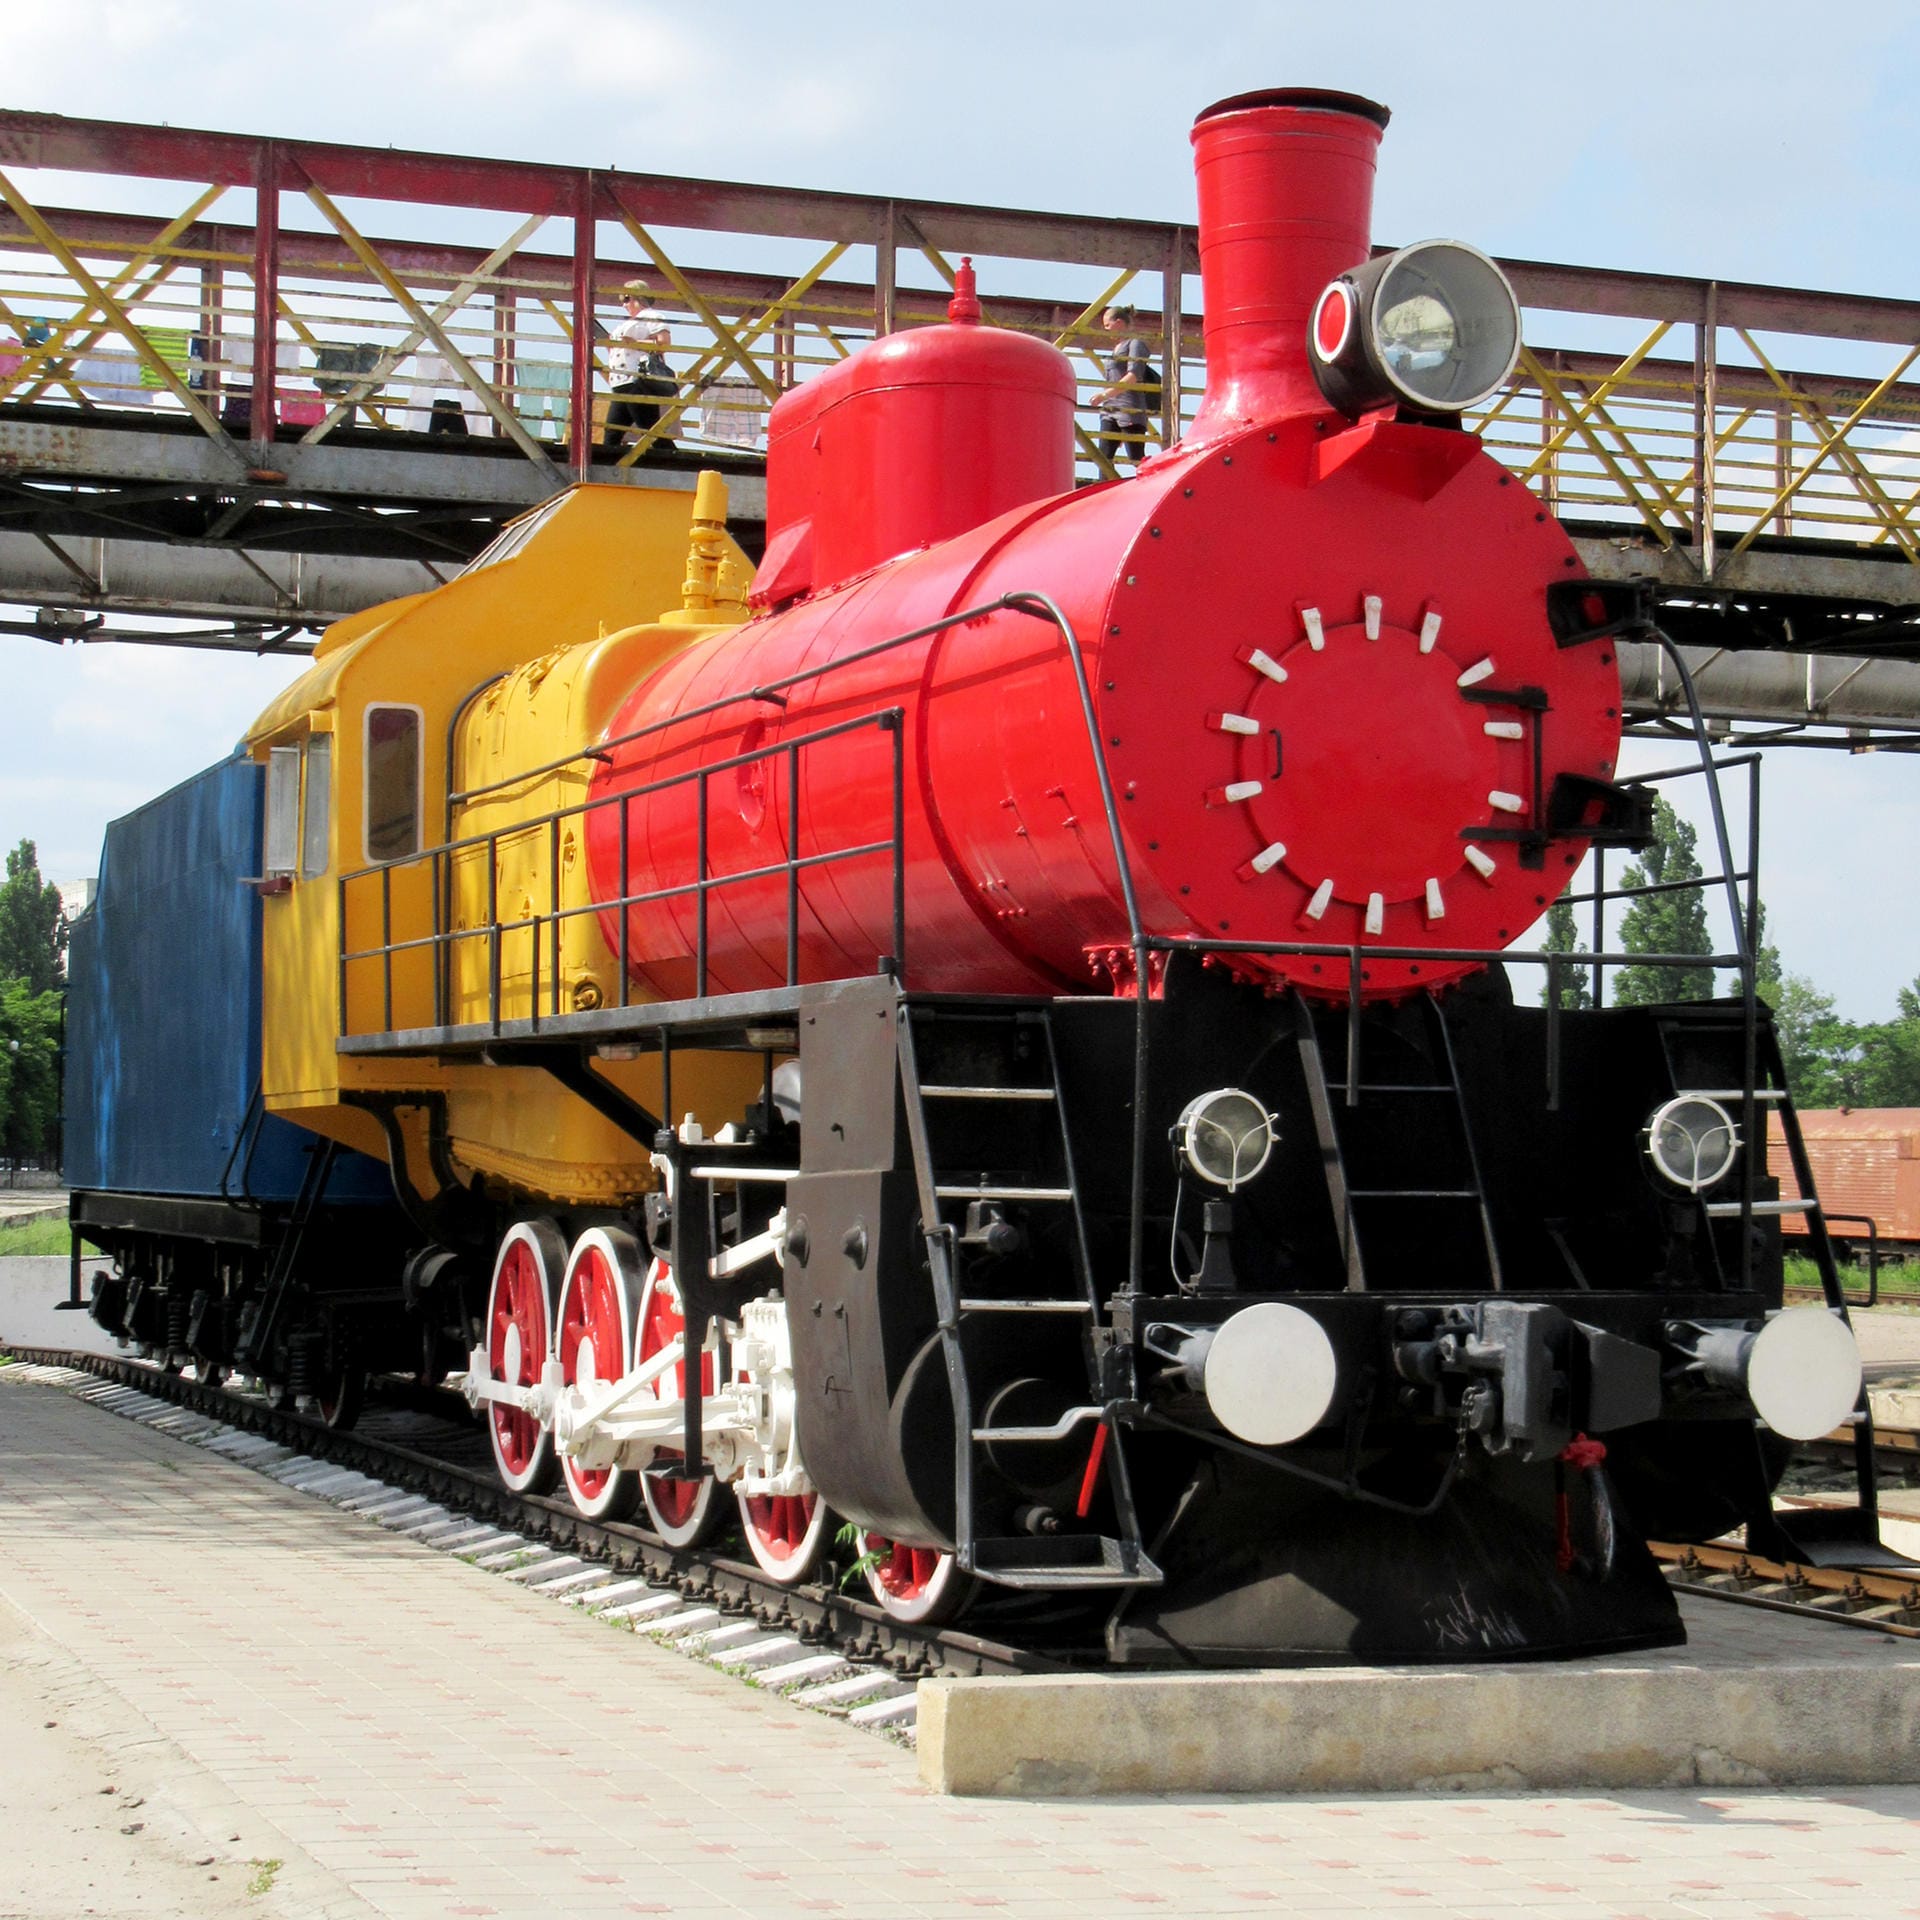 Nostalgie-Faktor: Bemalte, alte Dampflok im Bahnhof von Moldawiens Hauptstadt Chisinau.